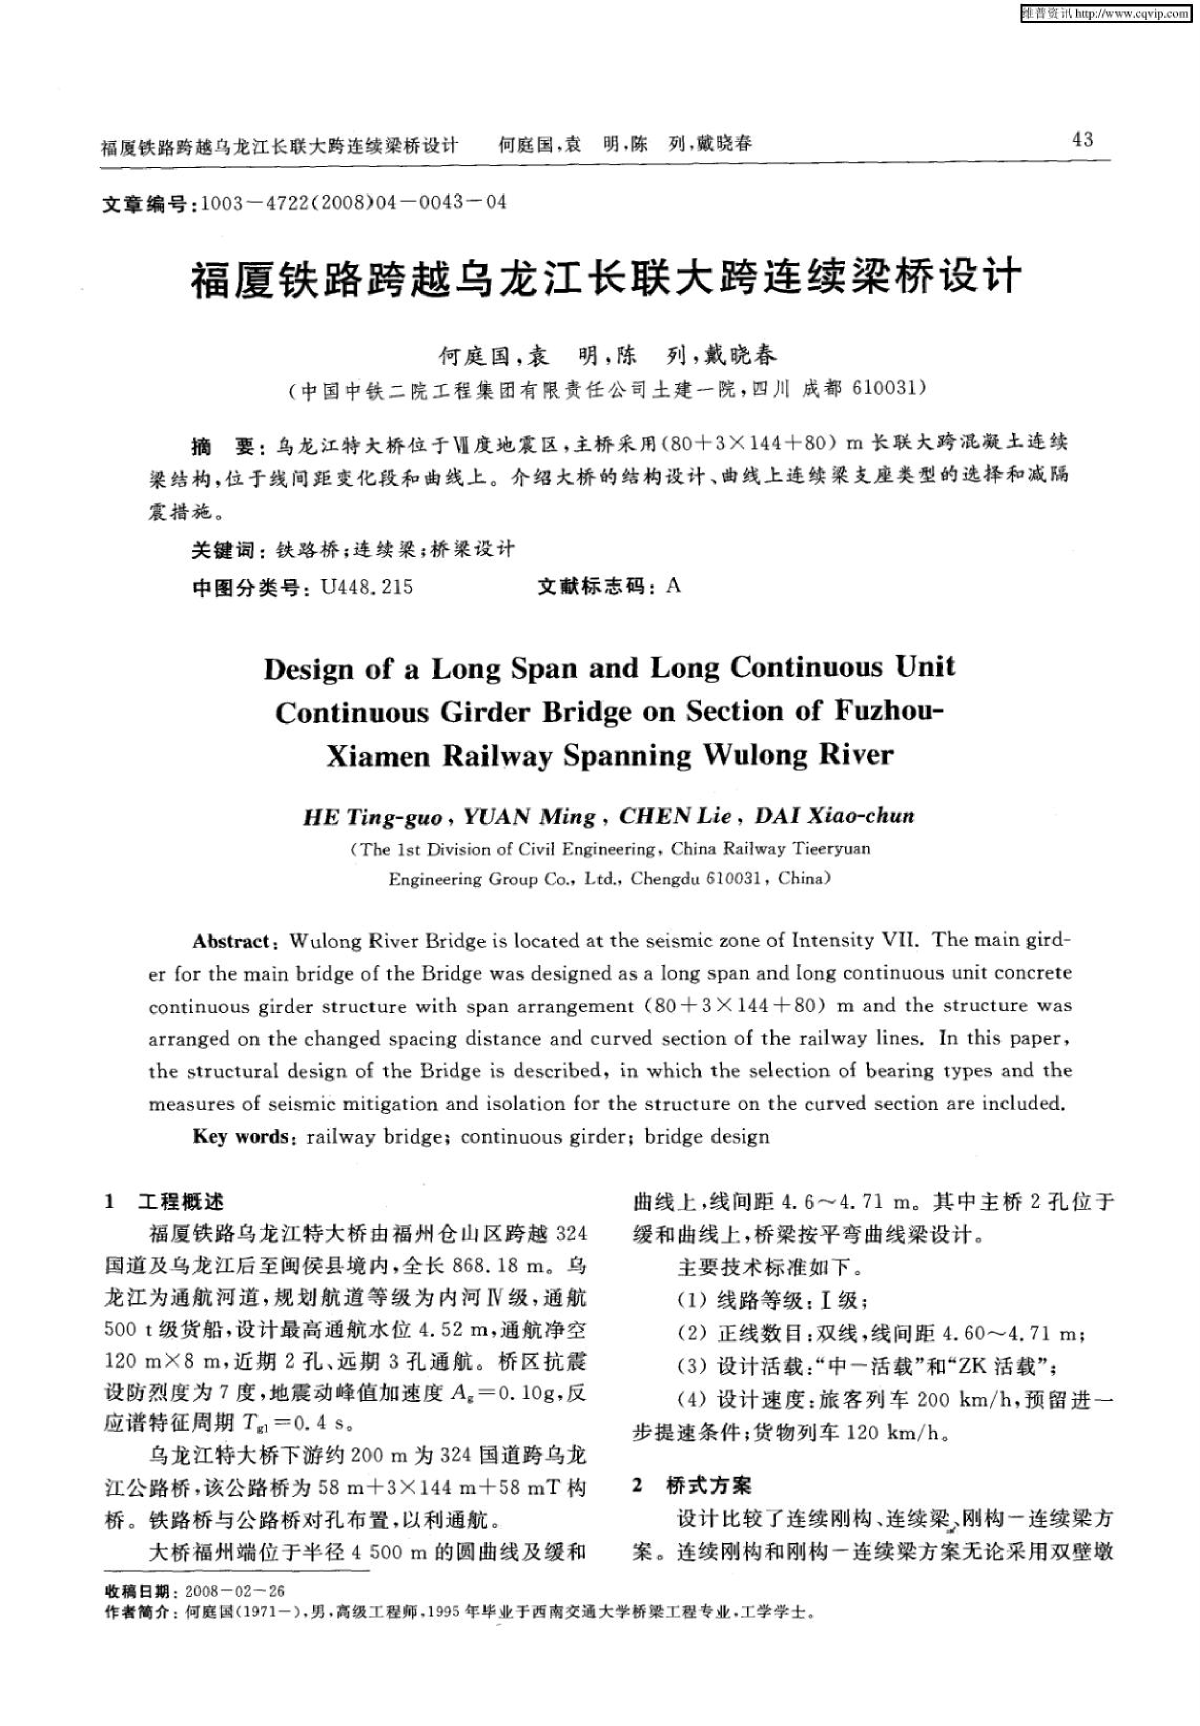 福厦铁路跨越乌龙江长联大跨连续梁桥设计.pdf-图二